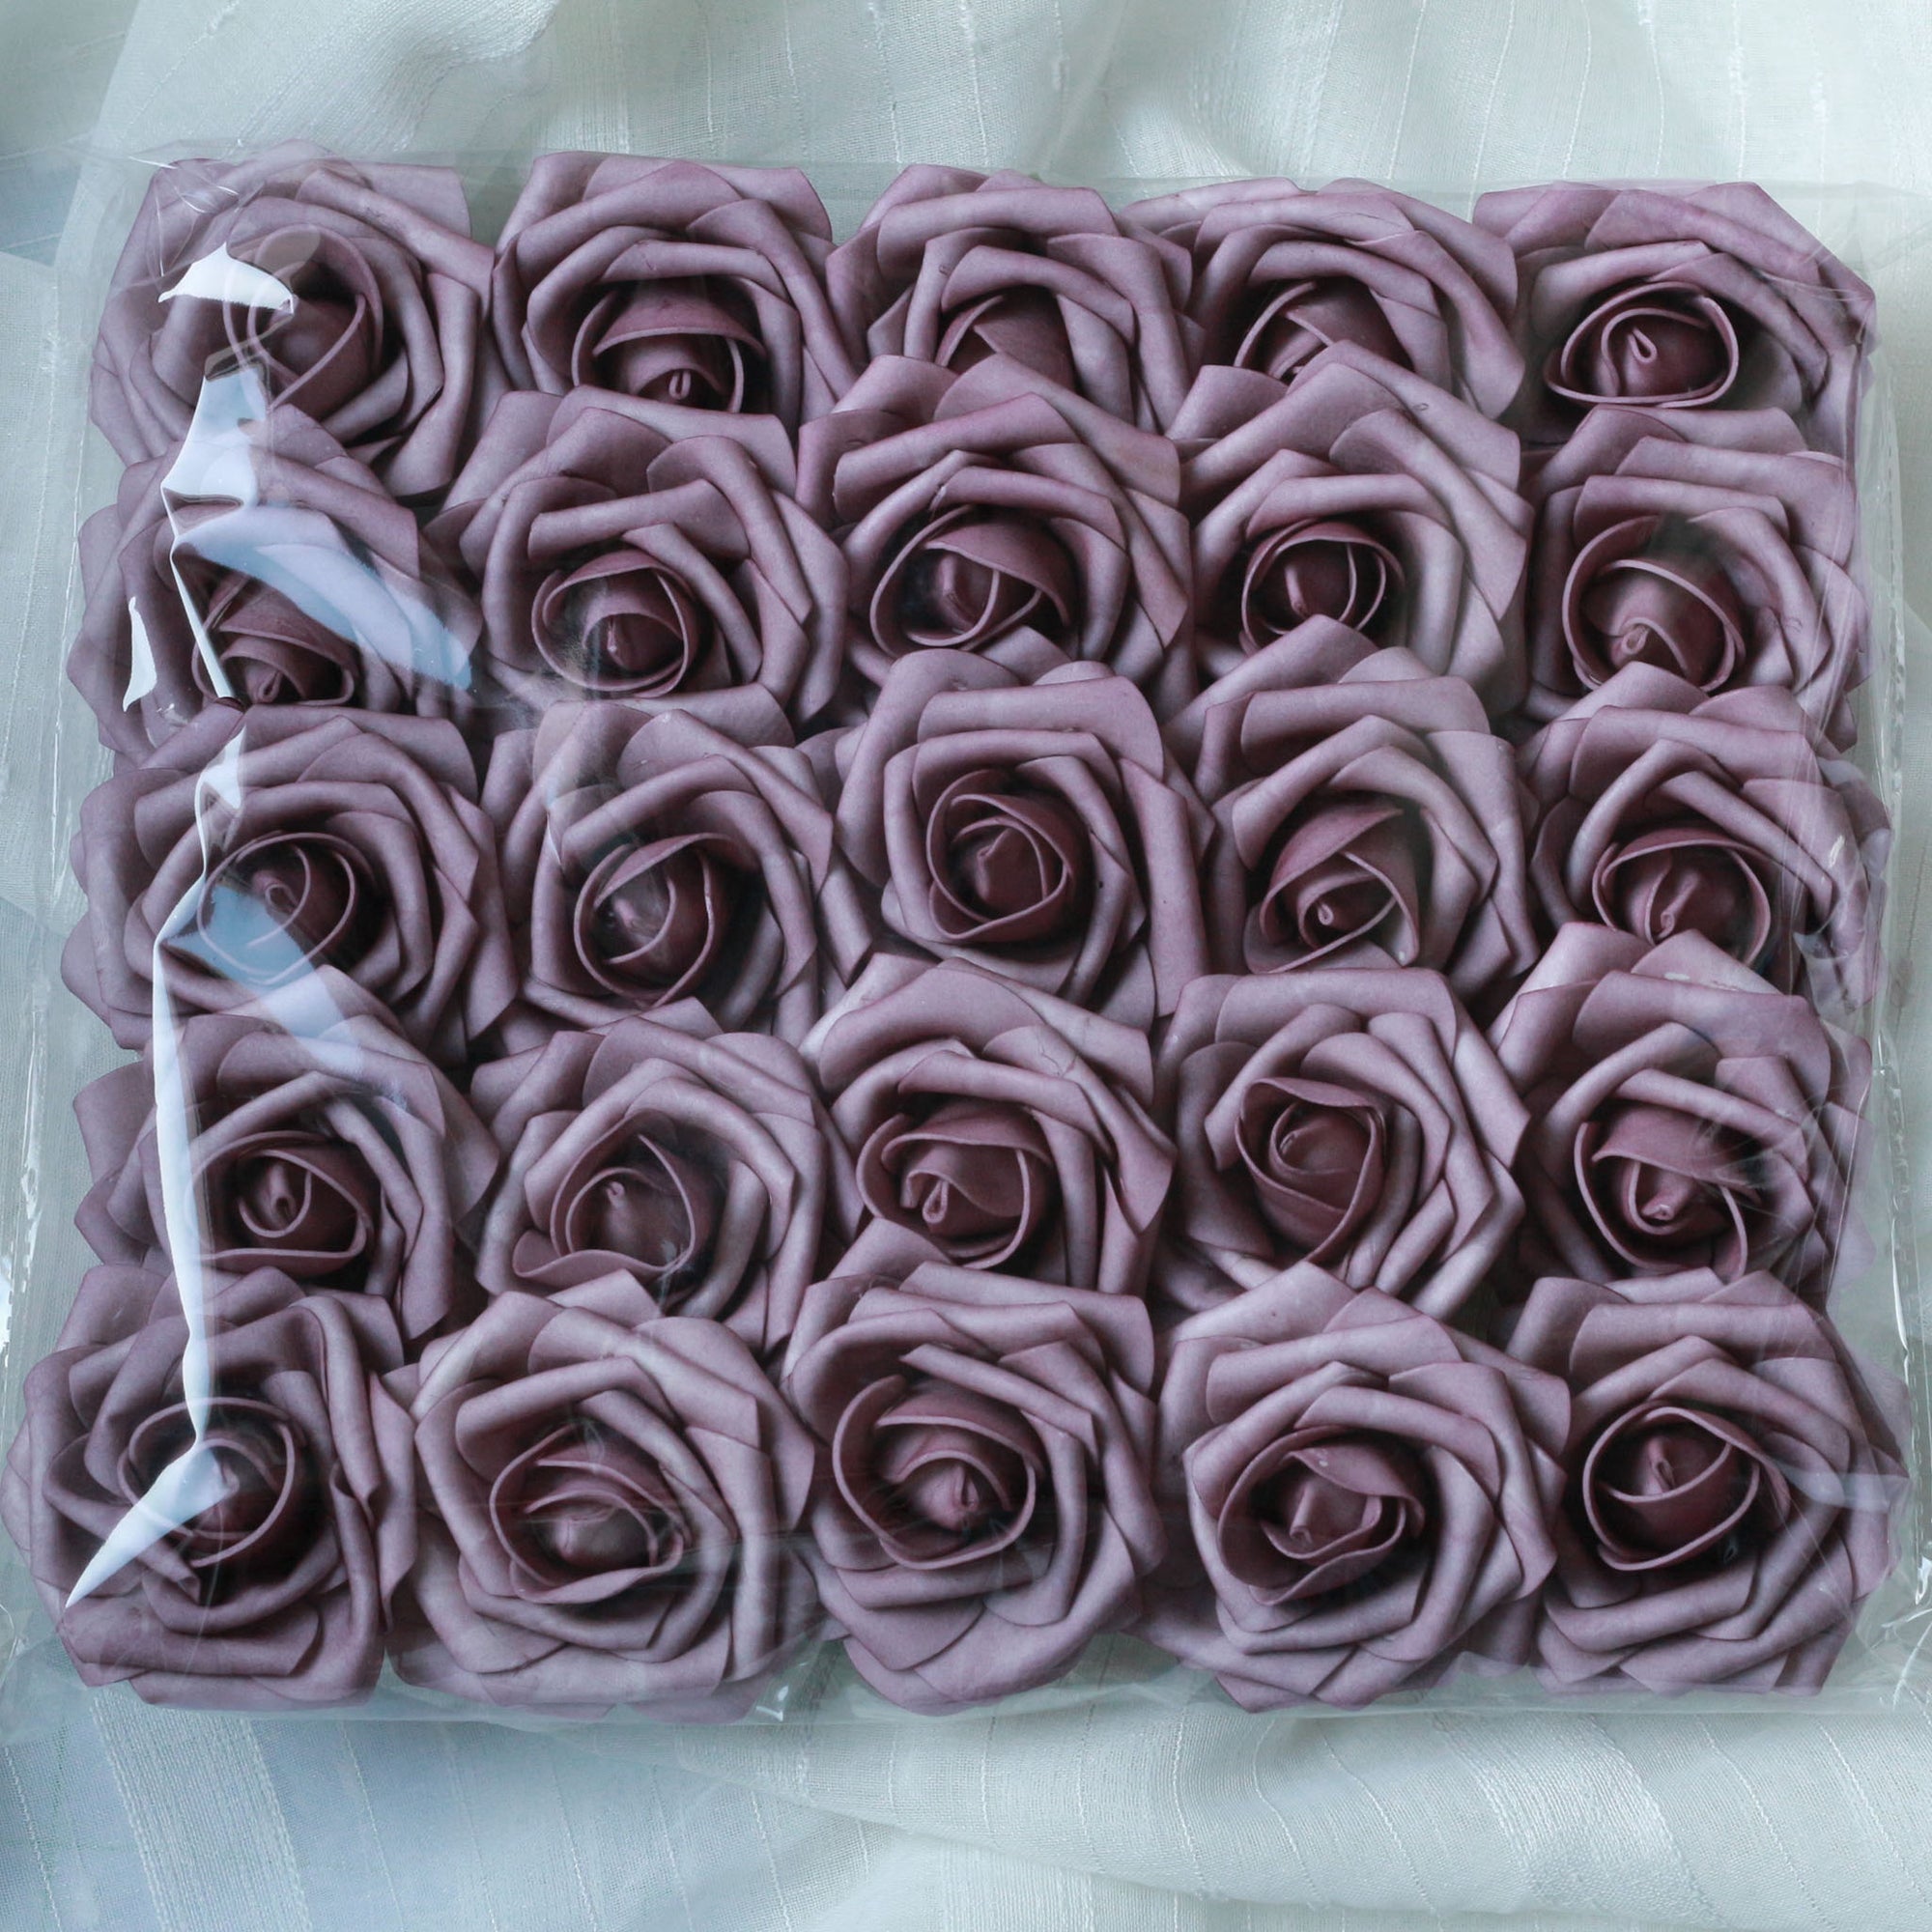 Dusty Purple Foam Roses Artificial Wedding Flowers